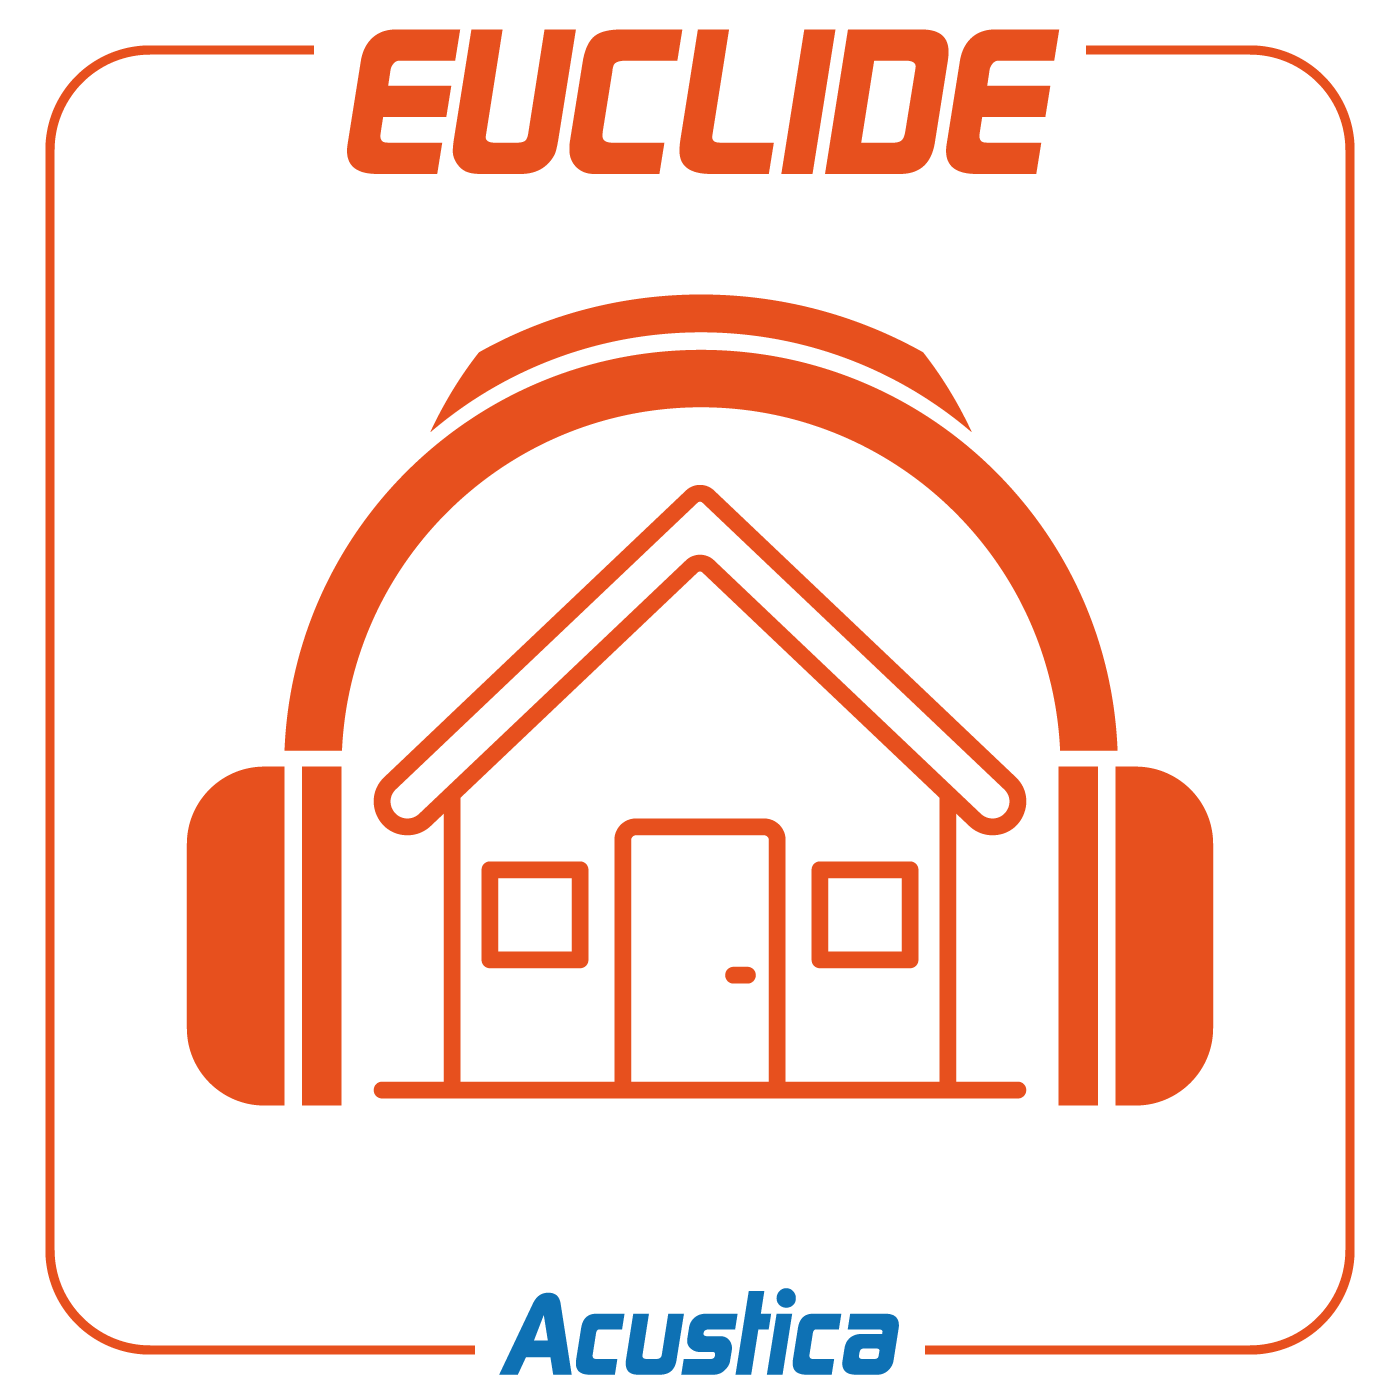 Euclide Acustica EdificiSoftware per la verifica della rispondenza dell’isolamento acustico di progetto alle prescrizioni del D.P.C.M. 5/12/1997 e la classificazione acustica